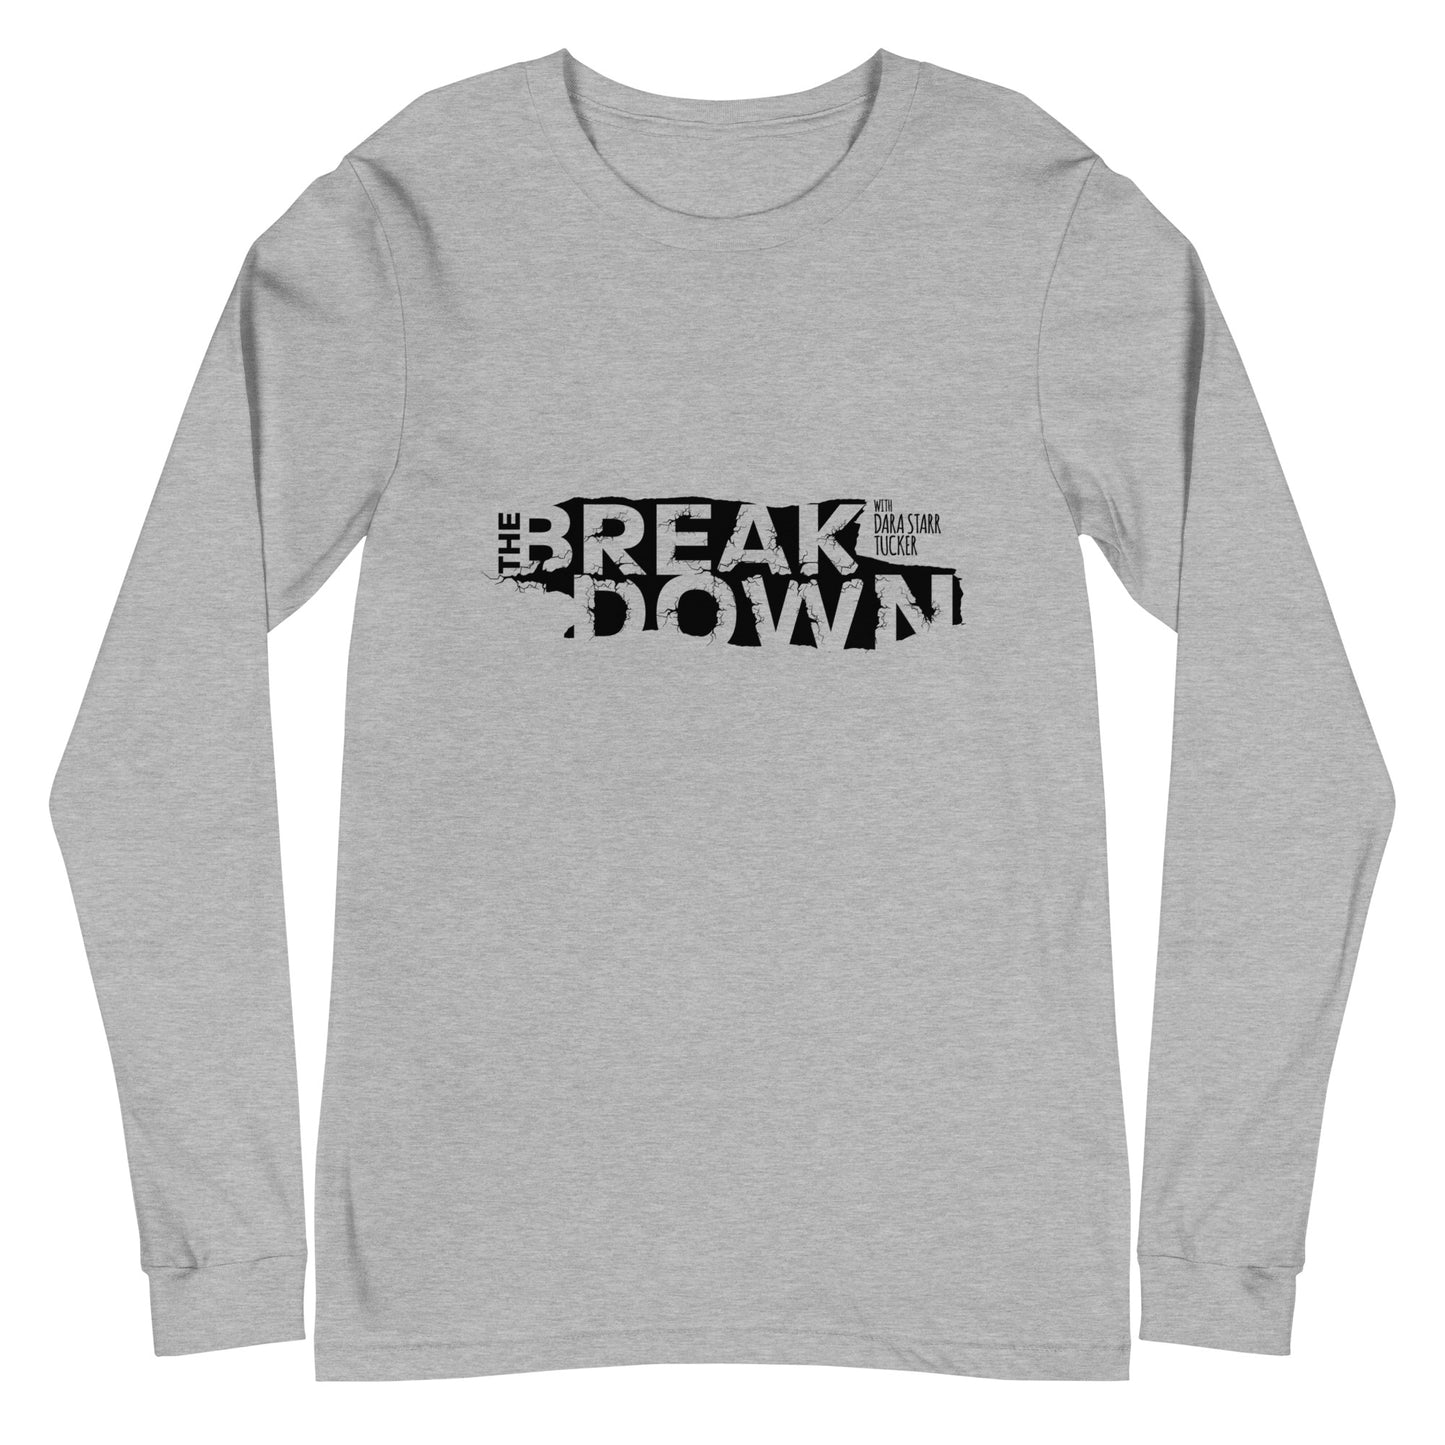 'The Breakdown' Men's Shirt - White/Silver Unisex Long Sleeve Tee